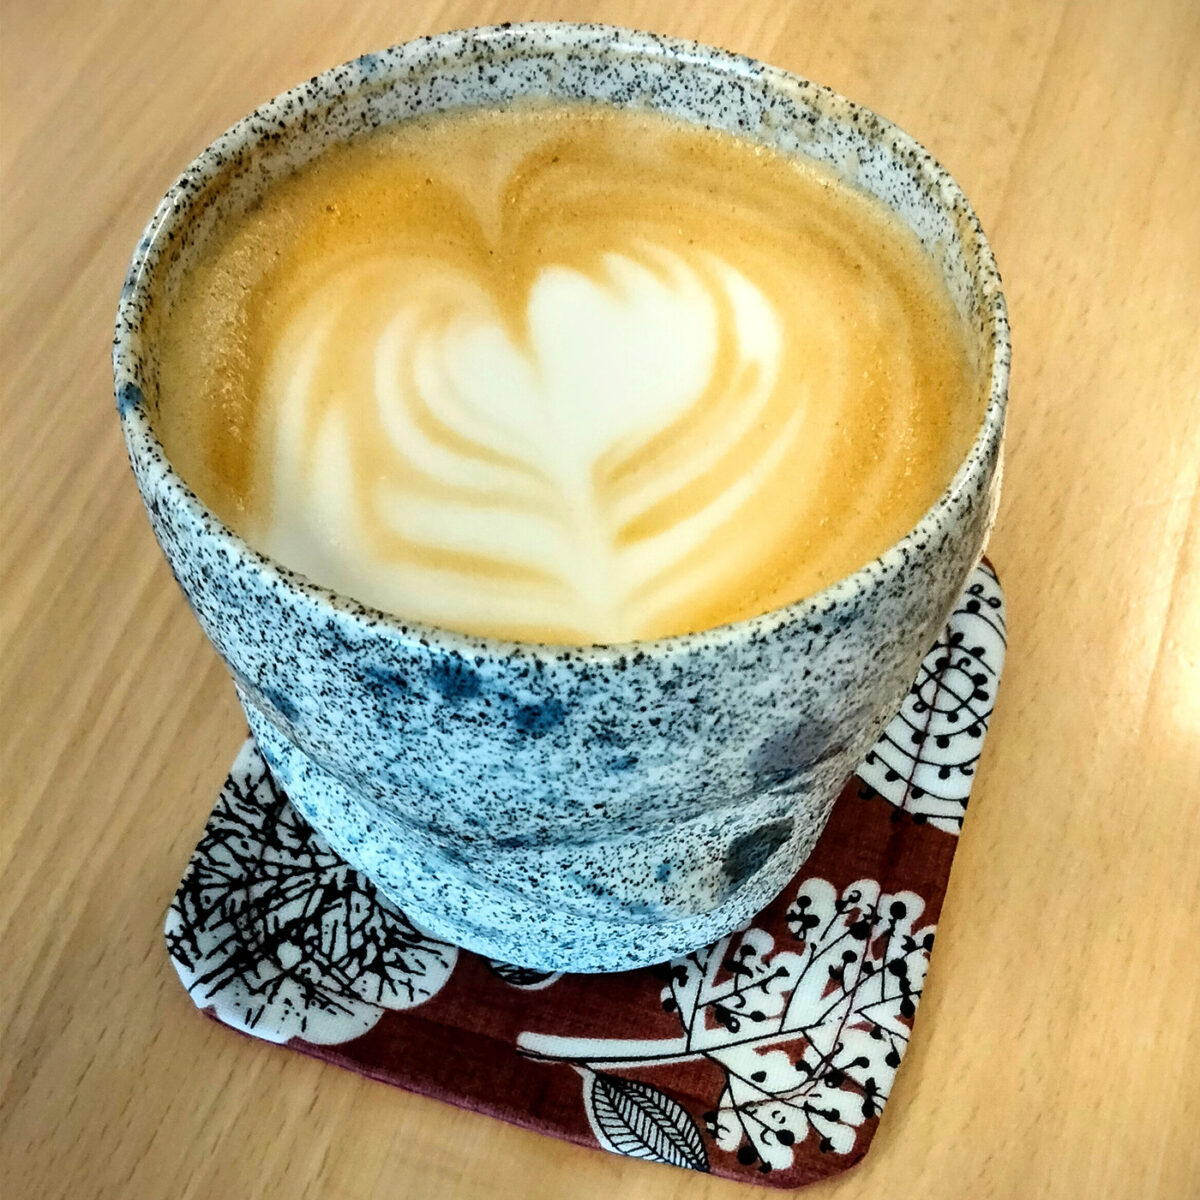 A lavender latte in a textured ceramic mug